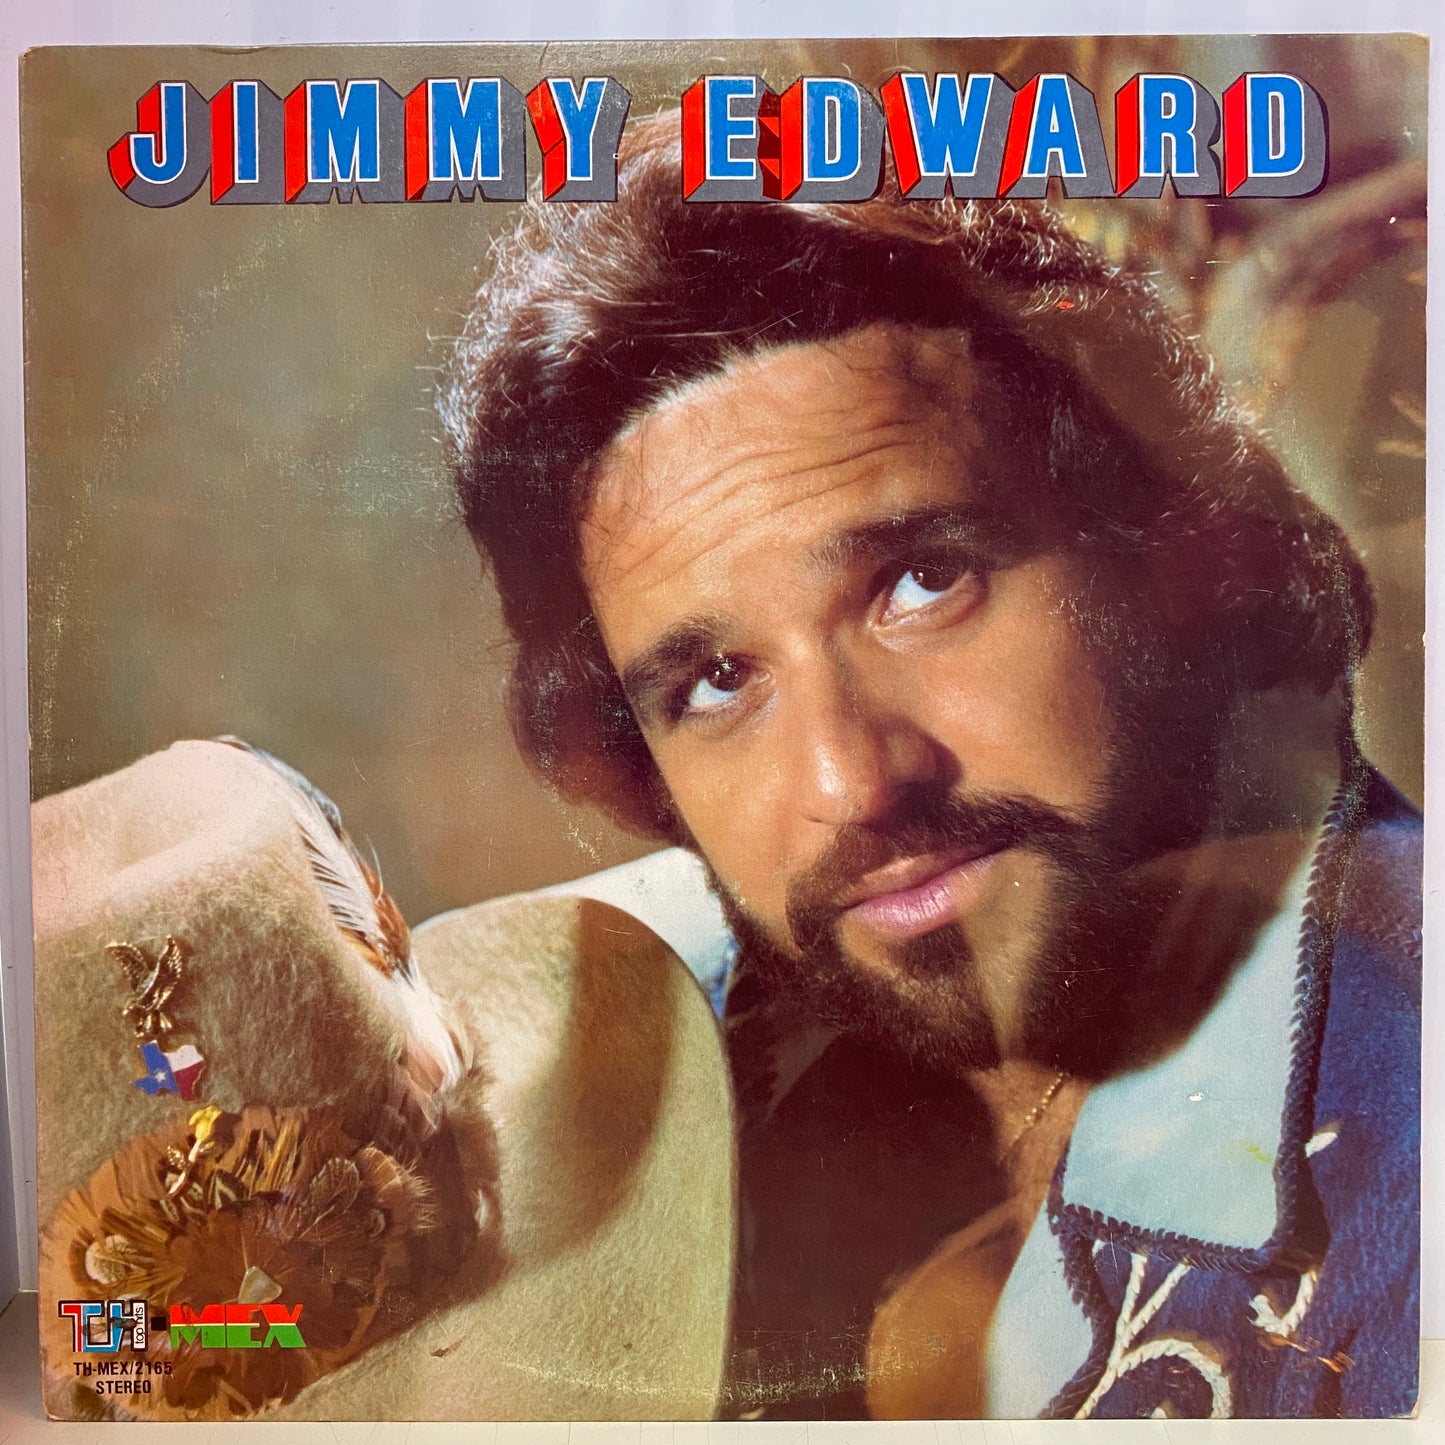 Jimmy Edward - Jimmy Edward (Vinyl)